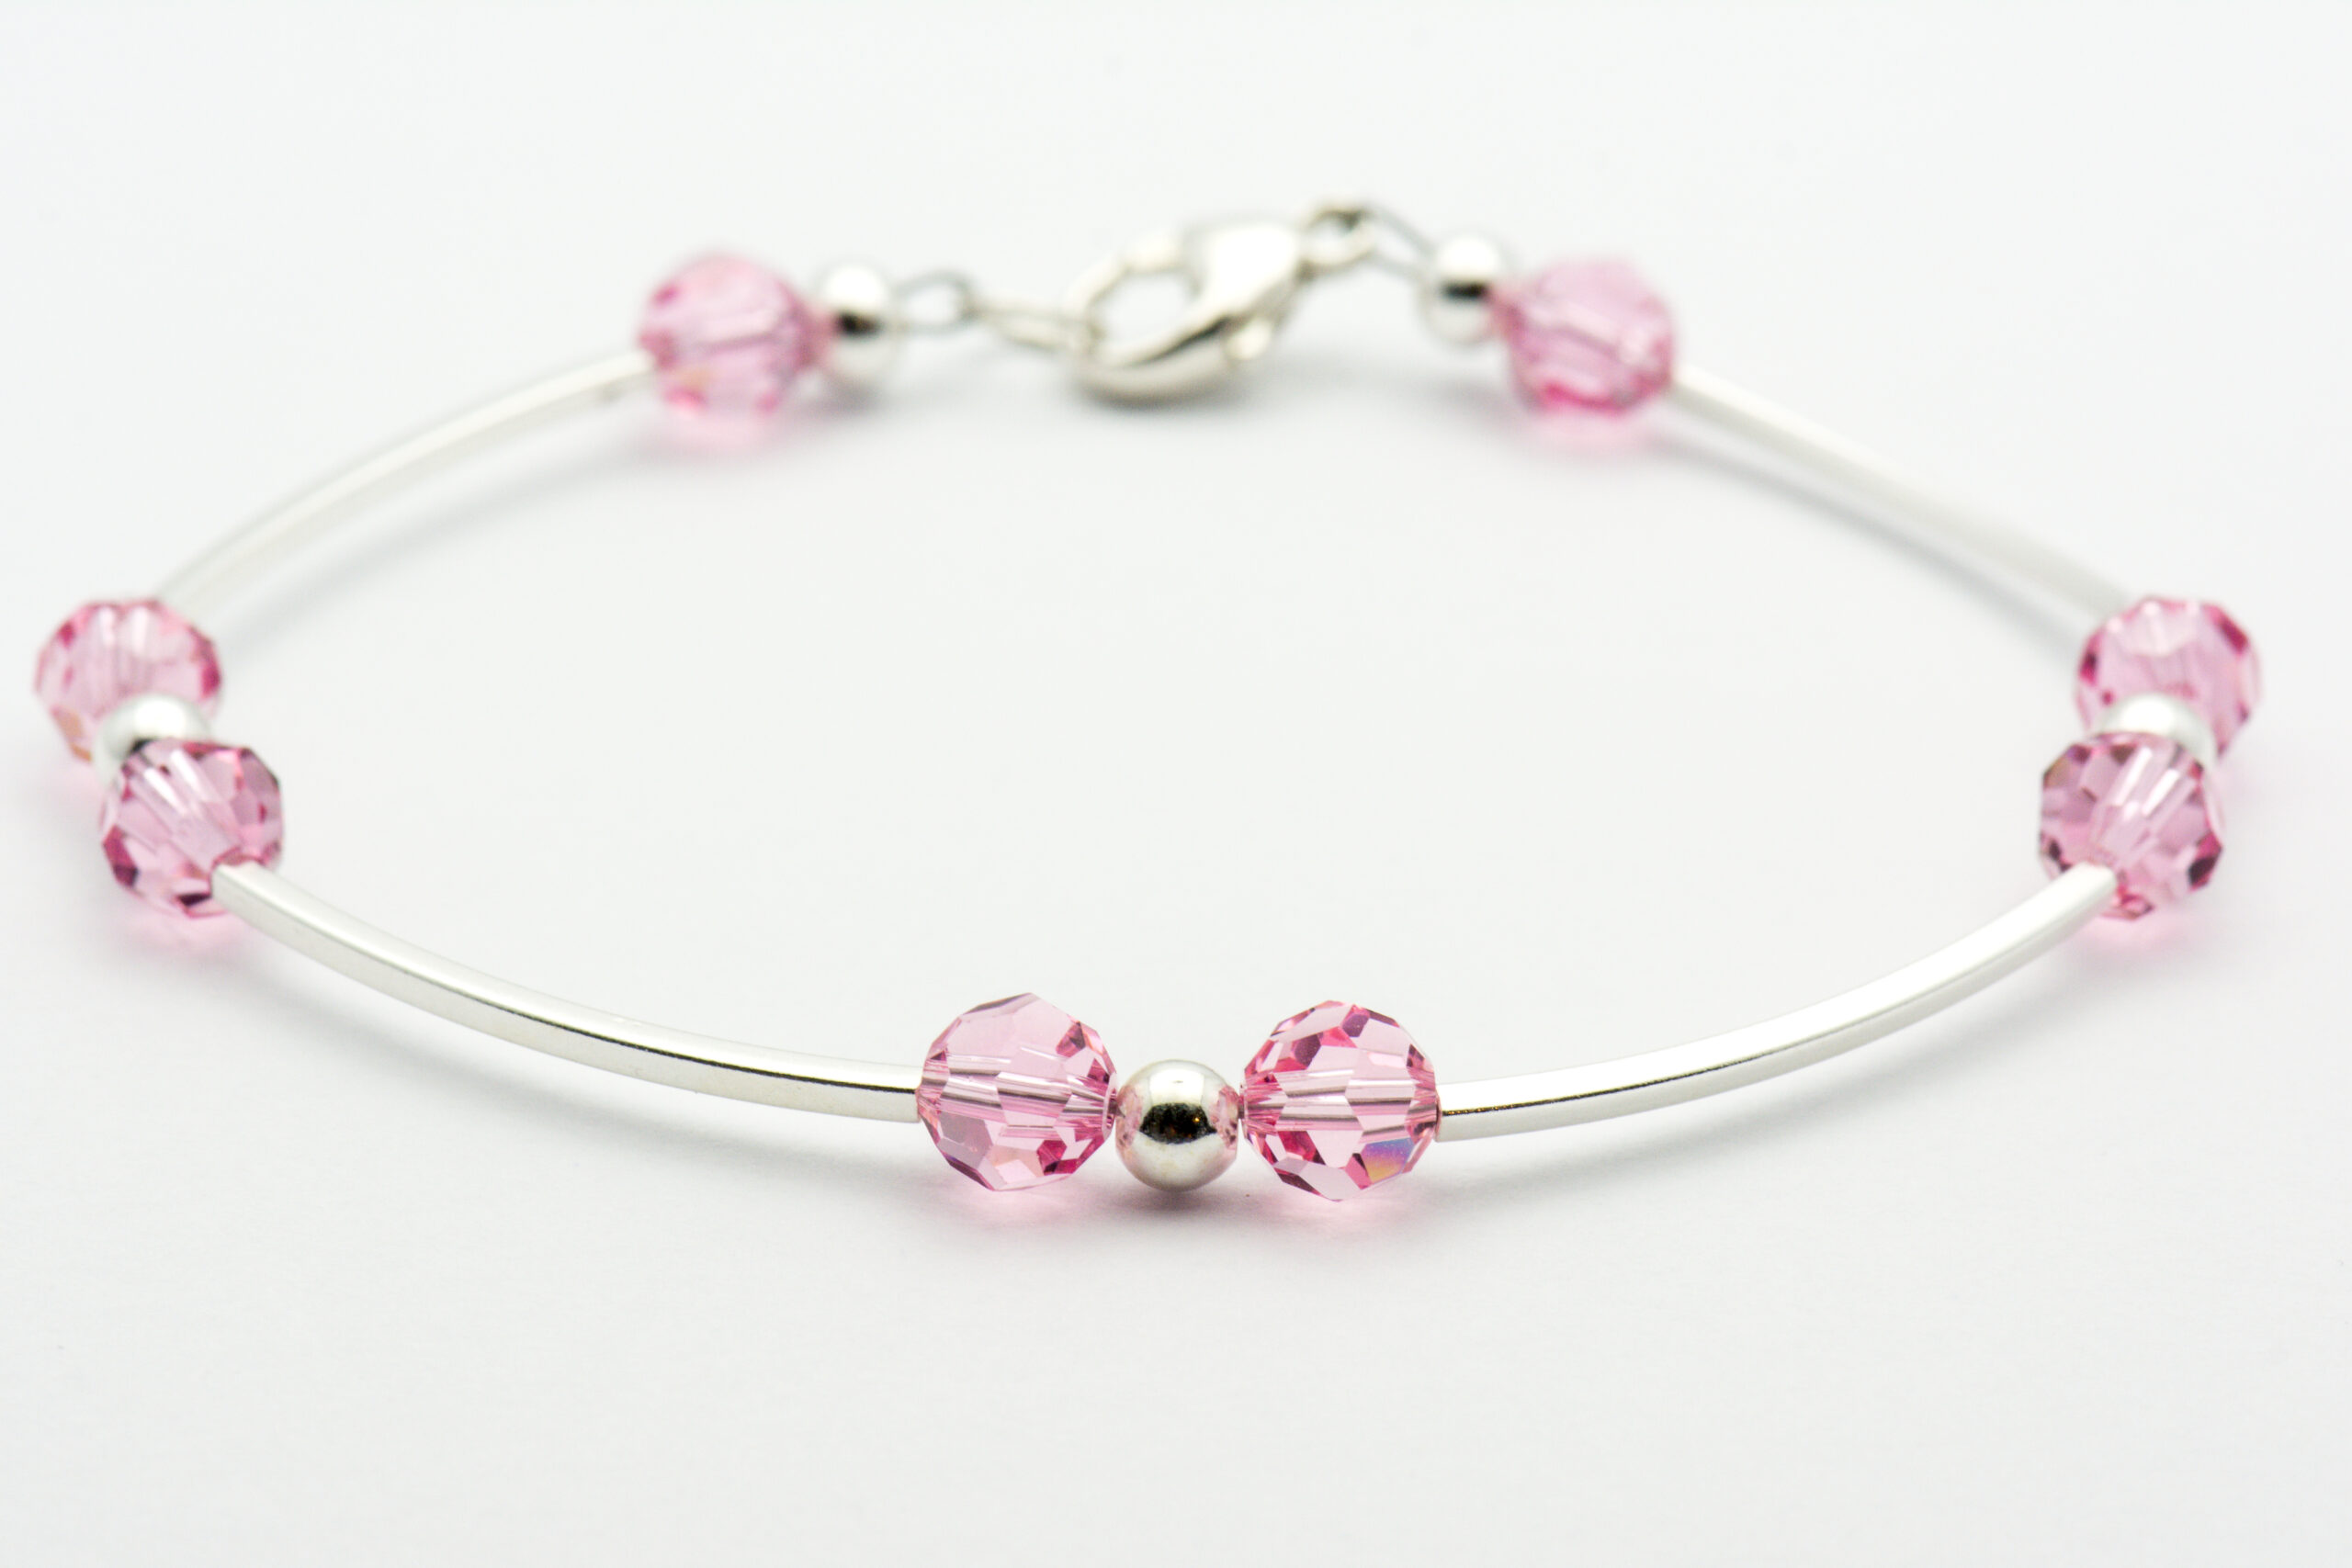 STRAWBERRY MILKSHAKE Swarovski Crystal 6mm Fancy Stone Tennis Style Bracelet  Light Rose and Rose Peach - Etsy